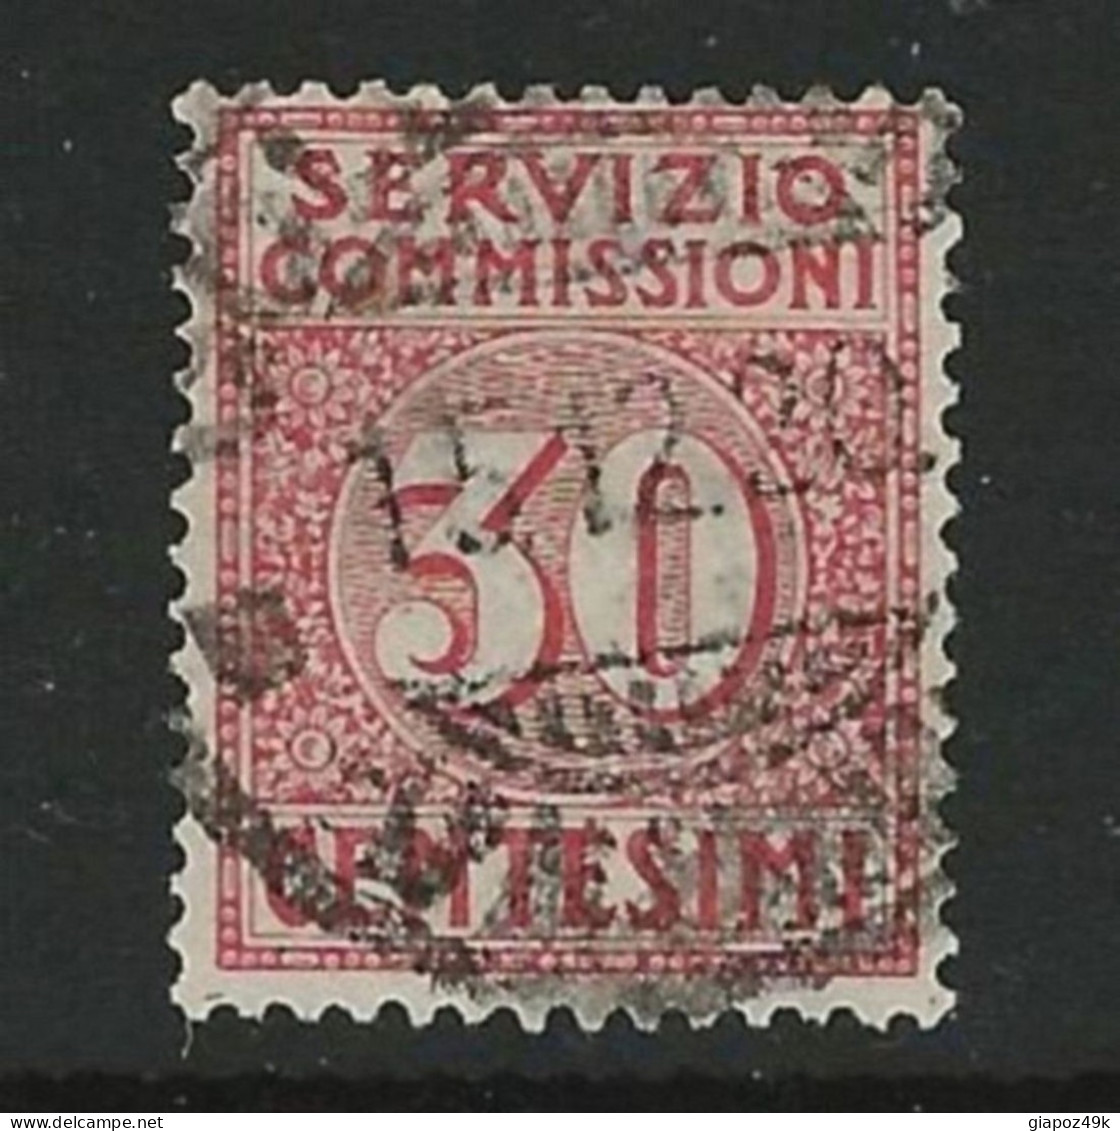 ● ITALIA REGNO 1913 ֍ SERVIZIO COMMISSIONI  ֍  N. 1 Usato ● Cat. 65 € ● Lotto N. 1930 ● - Strafport